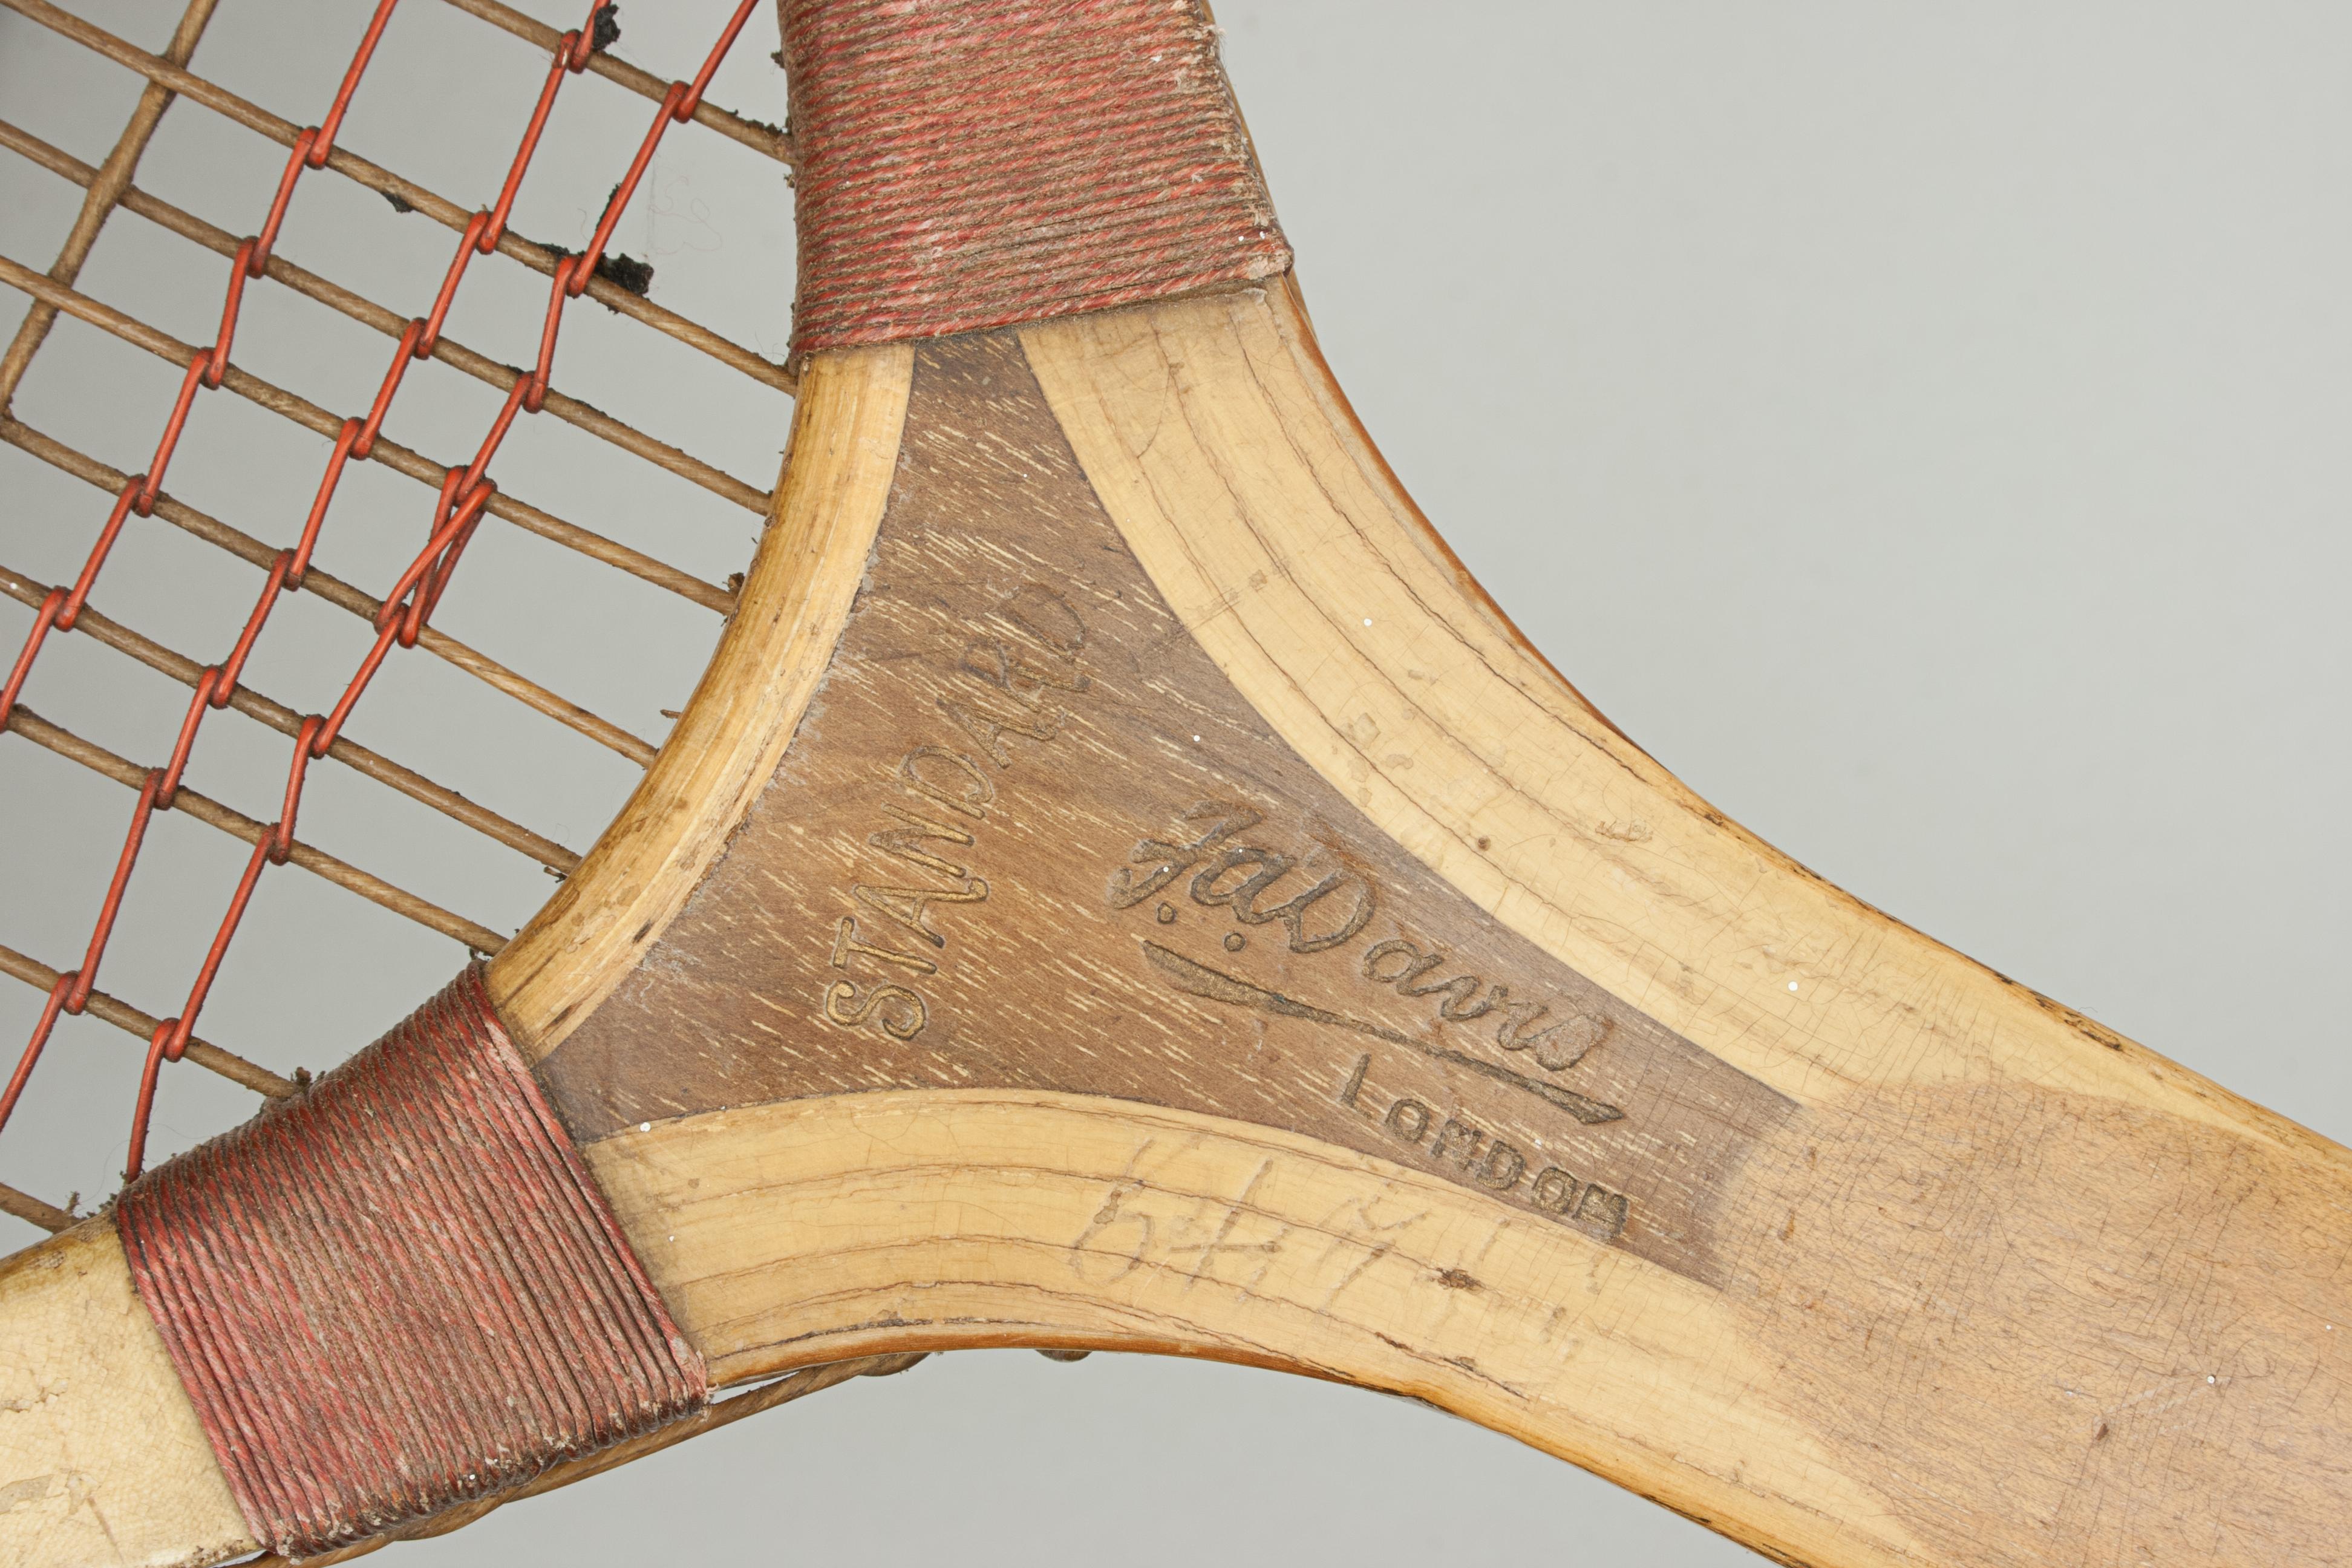 Sporting Art Vintage Tennis Racket